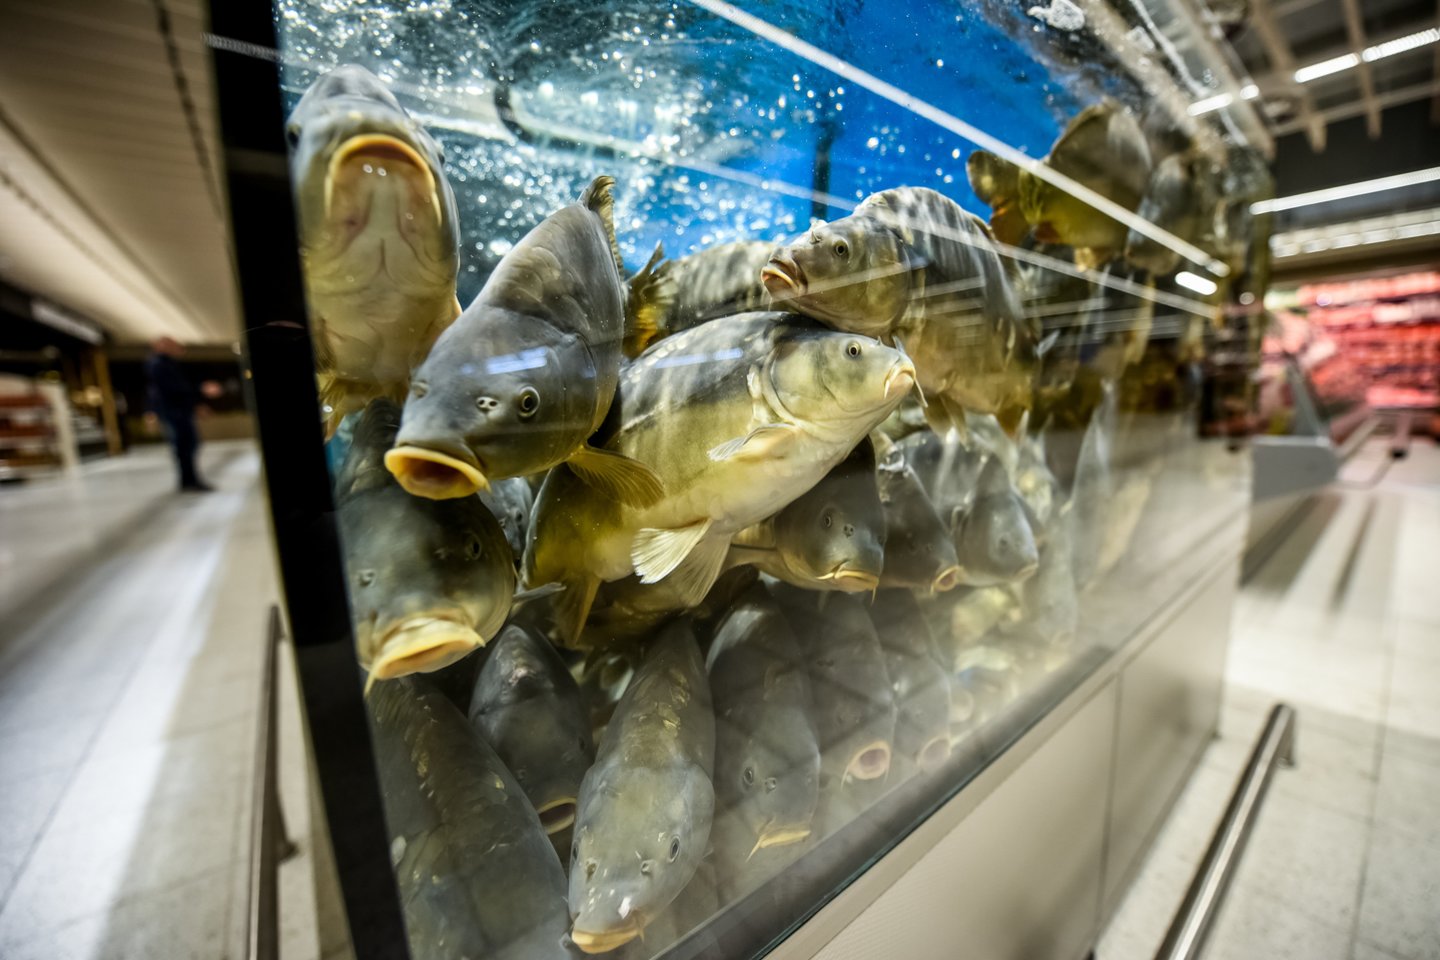 Nuo rugpjūčio 3 dienos gyvos žuvies prekyboje nebelieka visose lietuviško prekybos tinklo „Maxima“ XX formato parduotuvėse, kuriose buvo įrengta po vieną arba du gyvos žuvies akvariumus.<br>D.Umbraso nuotr.